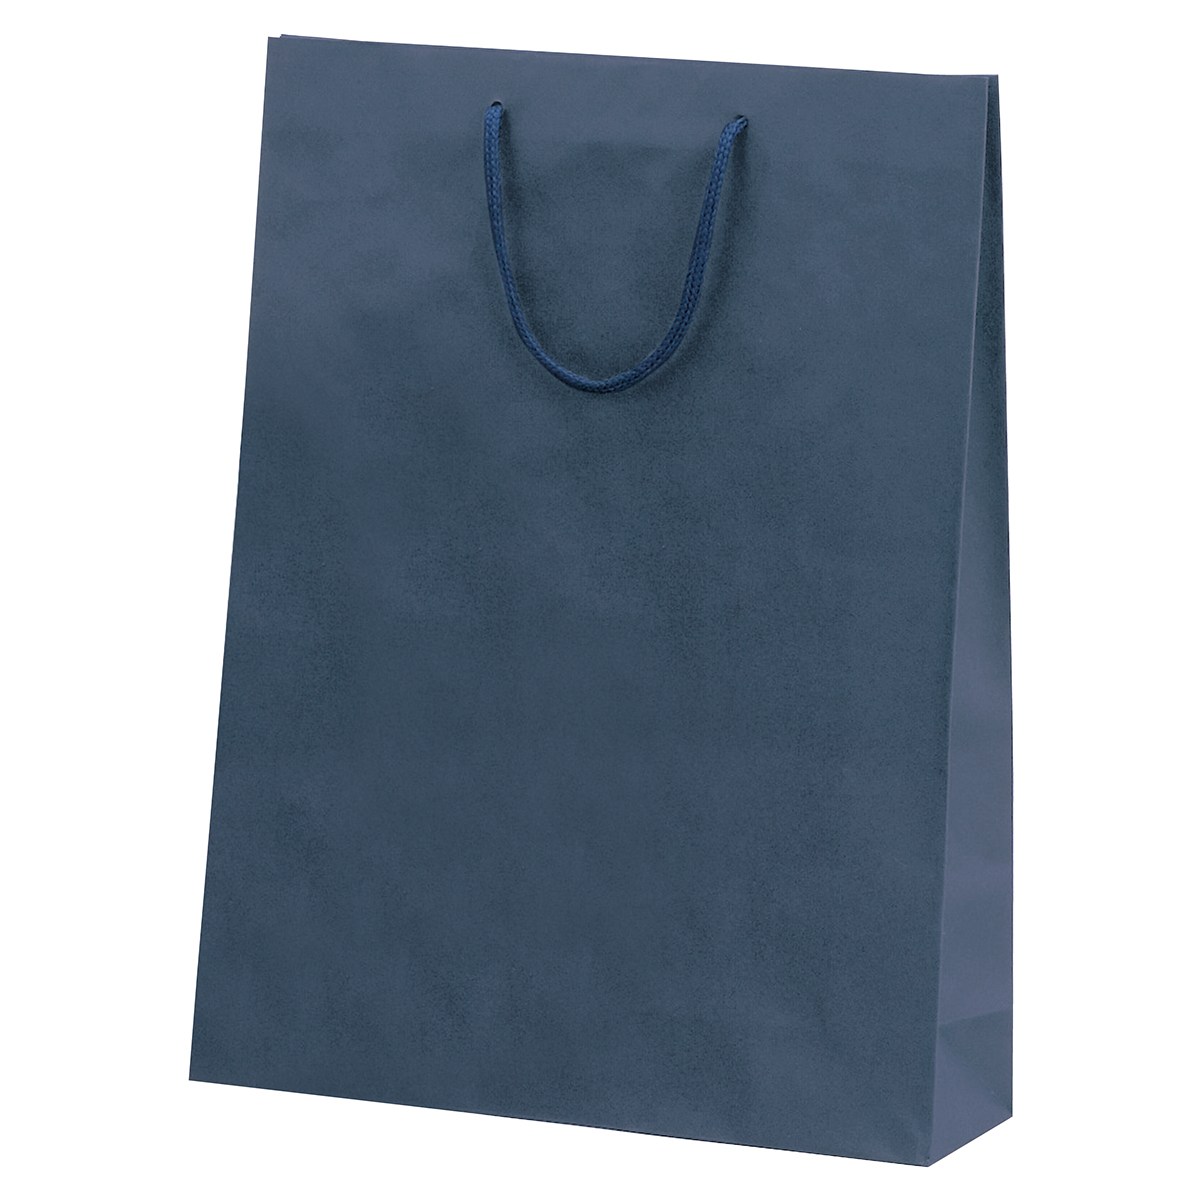 カラー手提げ紙袋 紺 20x12x25cm 【通販】ストア・エキスプレス